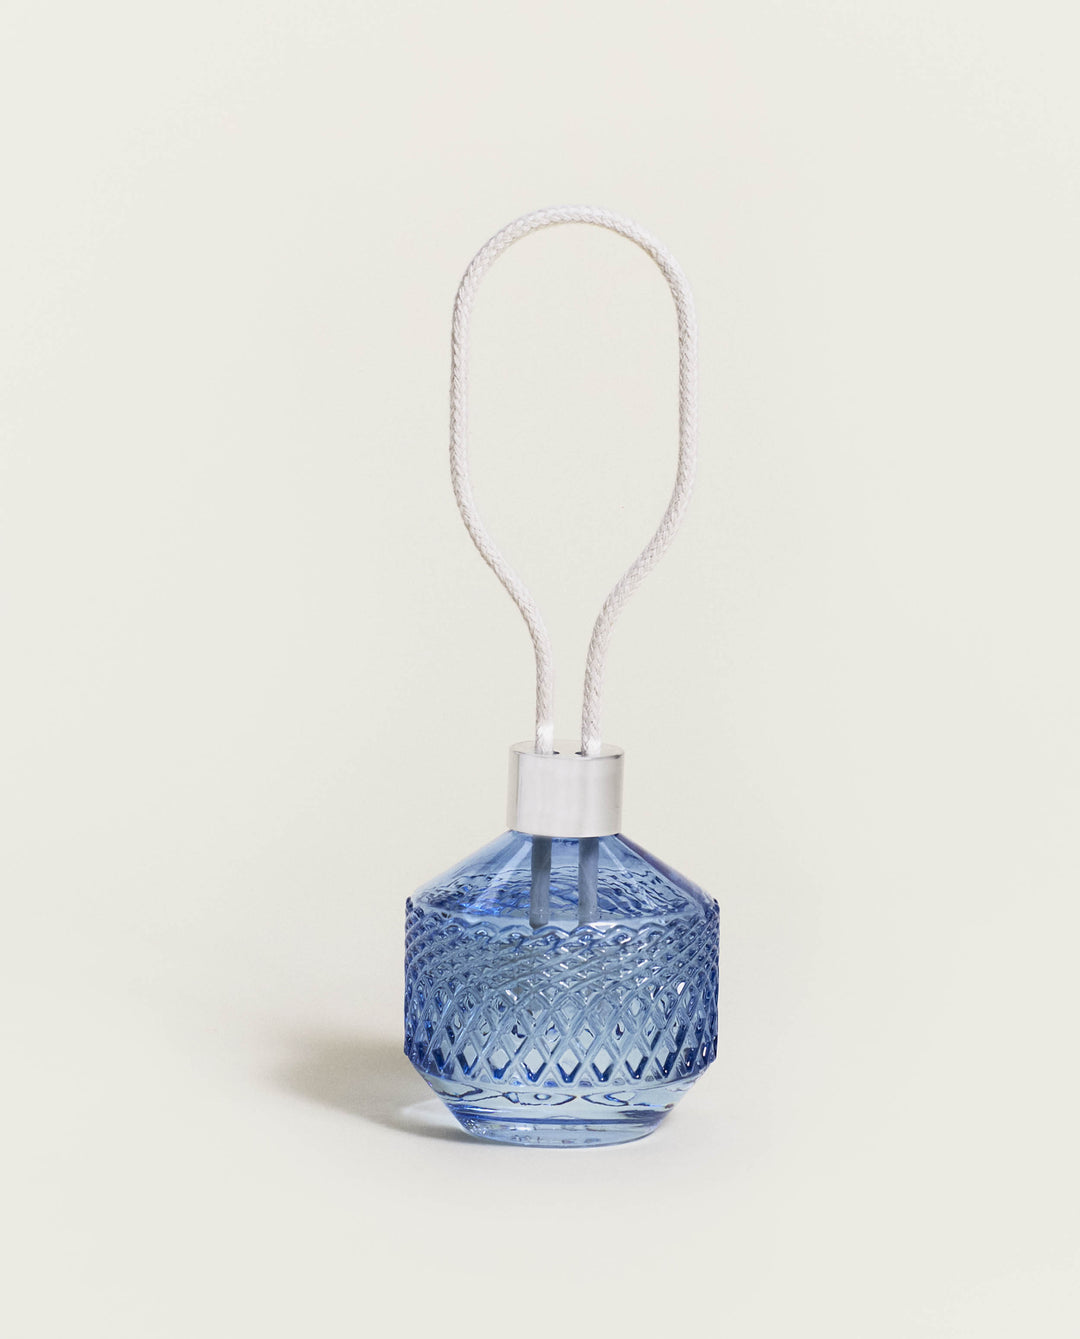 Raumduft Diffuser matali crasset blau - Ewige Harmonie Lampe Berger - Maison Berger offizieller Onlineshop DE - AT